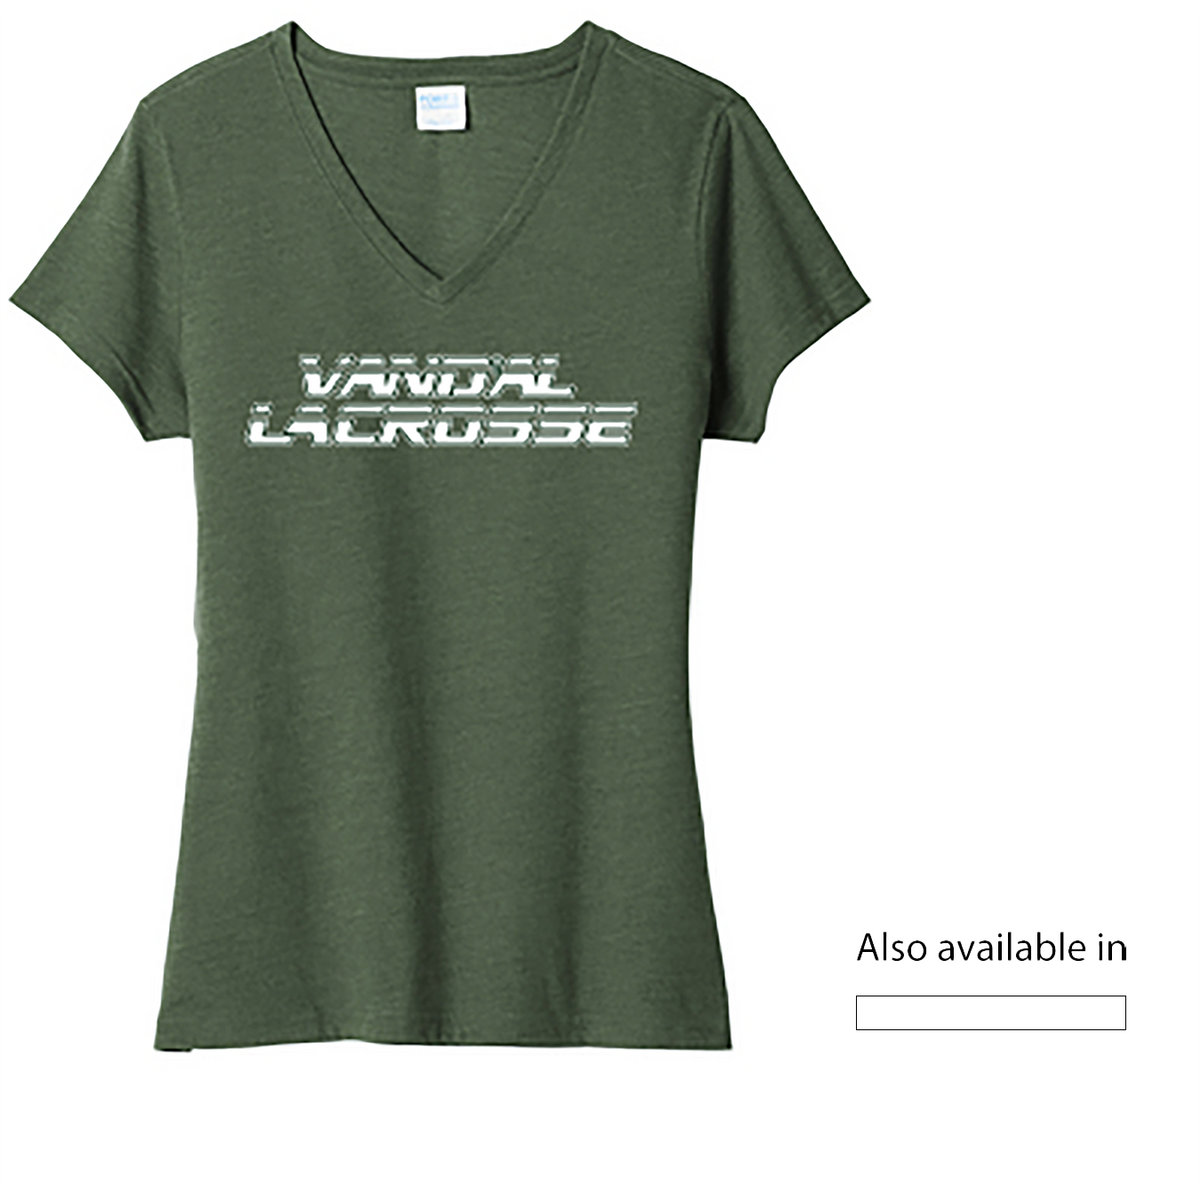 Vand'al Lacrosse Ladies Fan Favorite V-Neck Tee